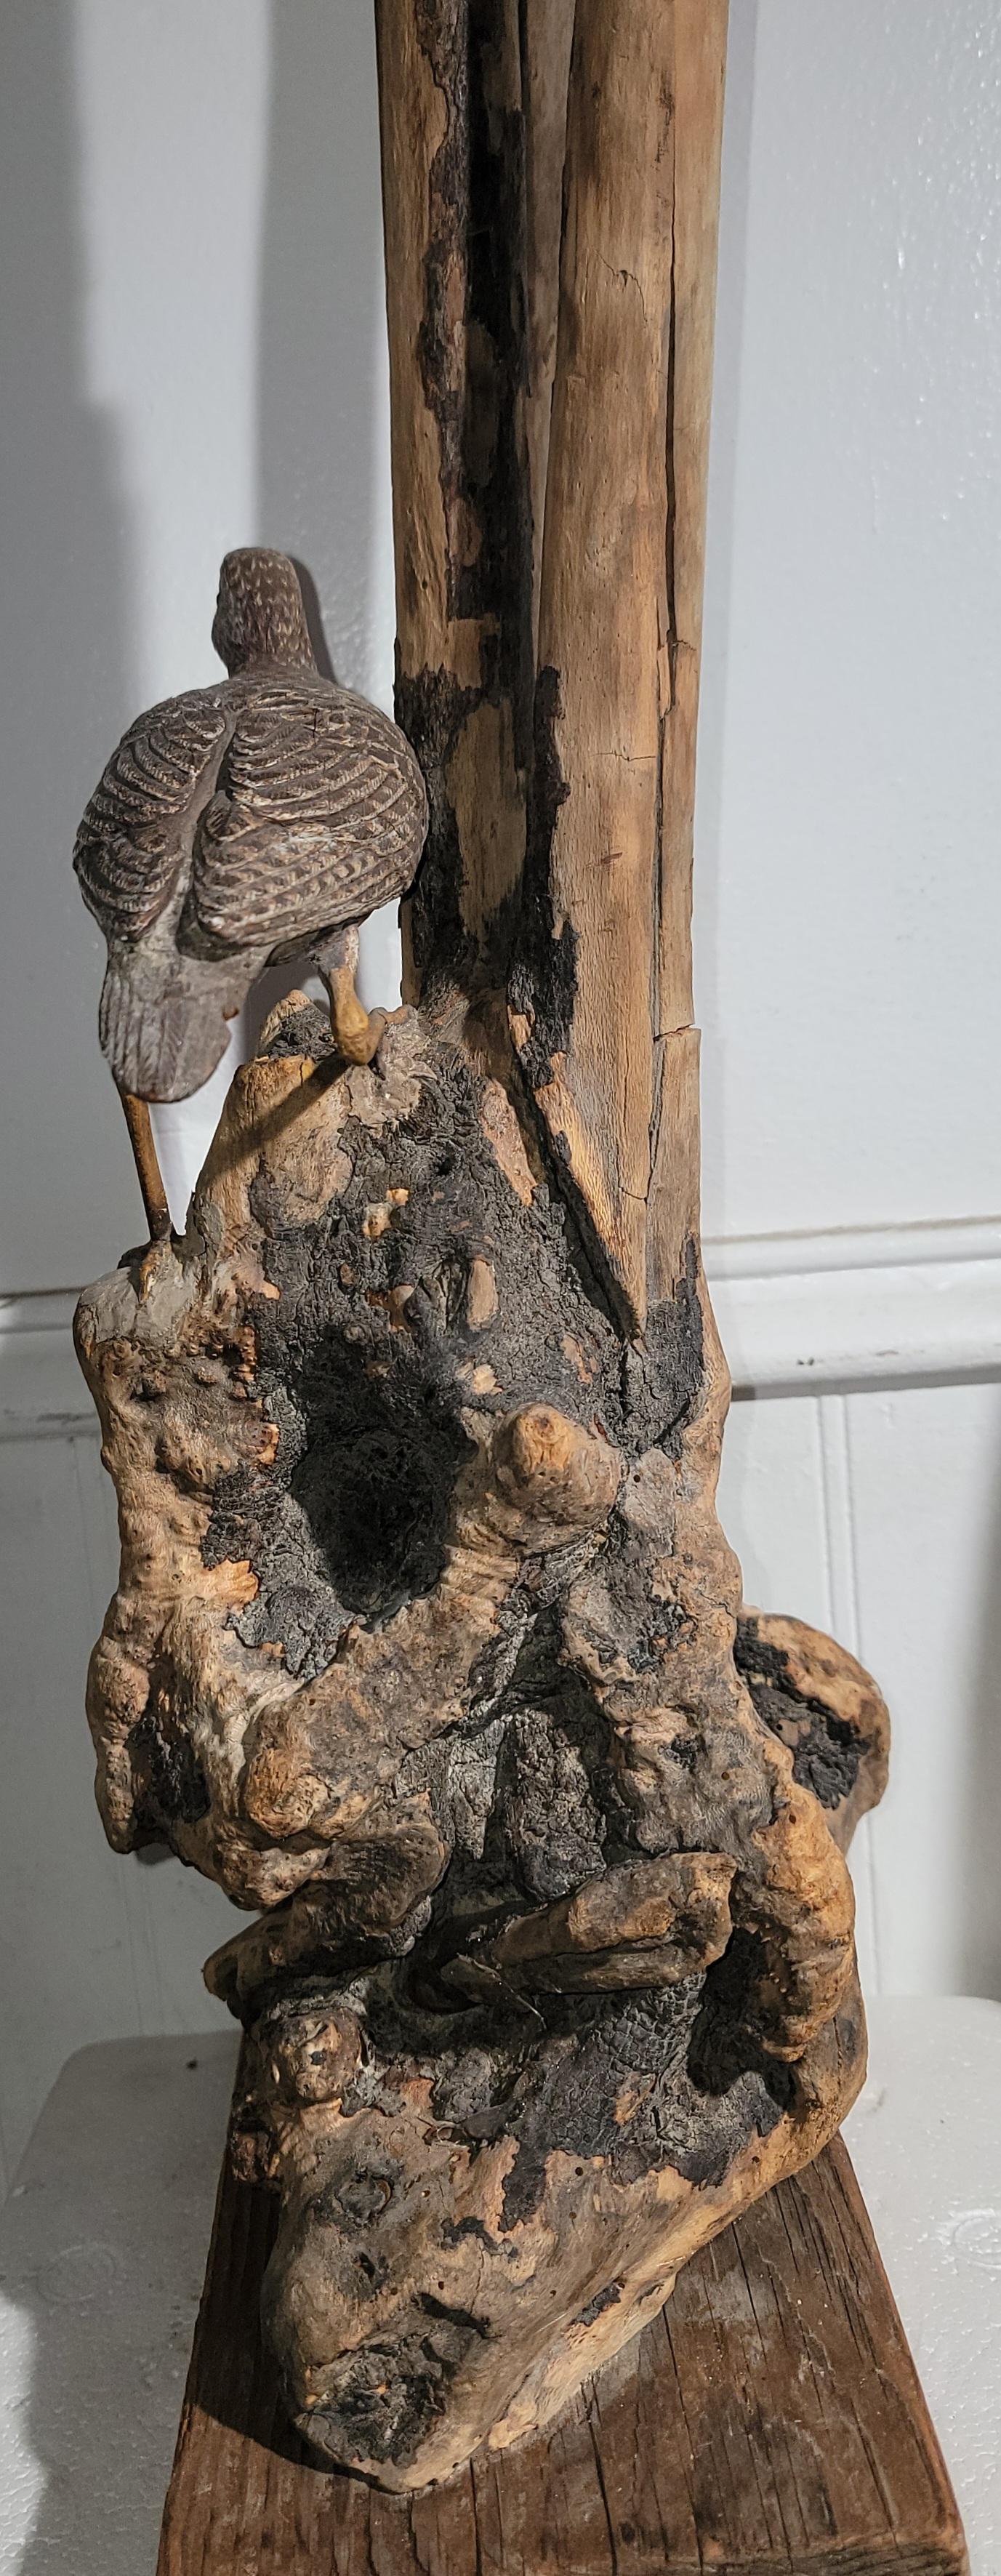 Adirondack Folk Art Drift Wood Sculpture W/ Bird For Sale